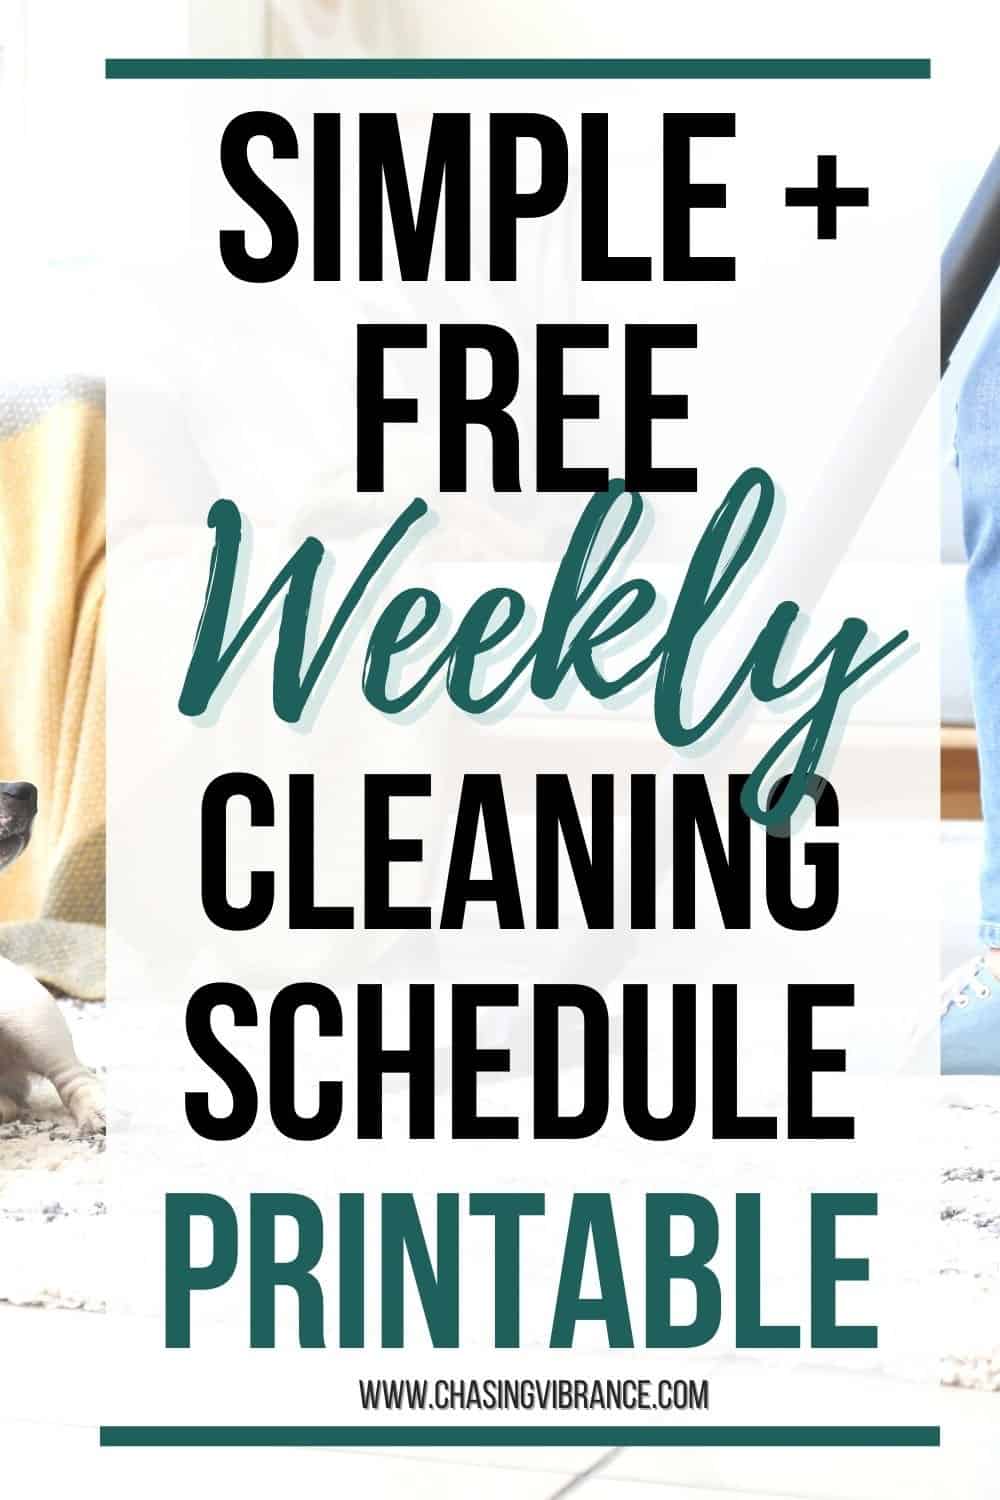 Simple + Free Weekly Cleaning Schedule Printable